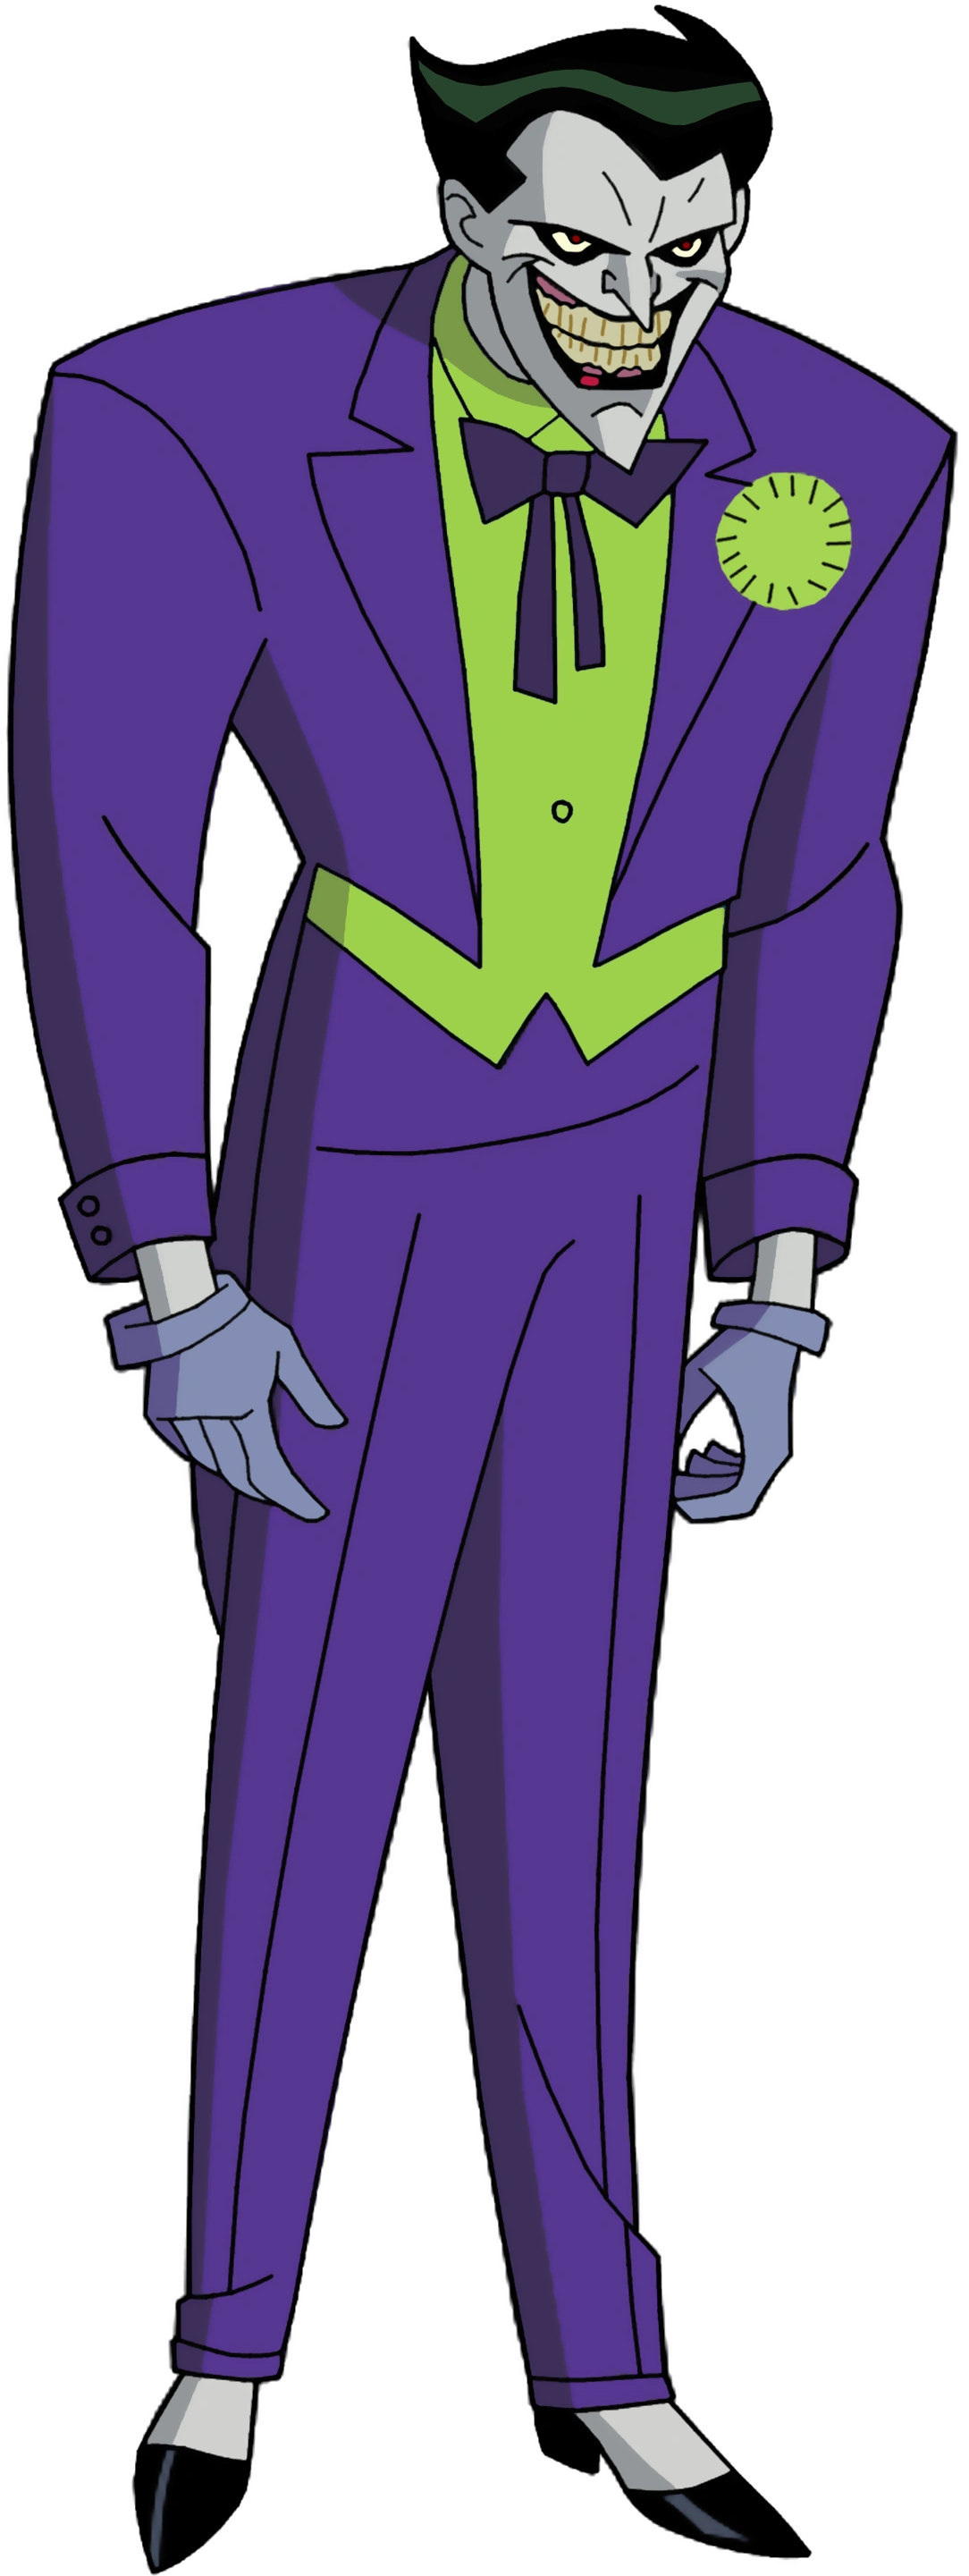 batman villains cartoon joker